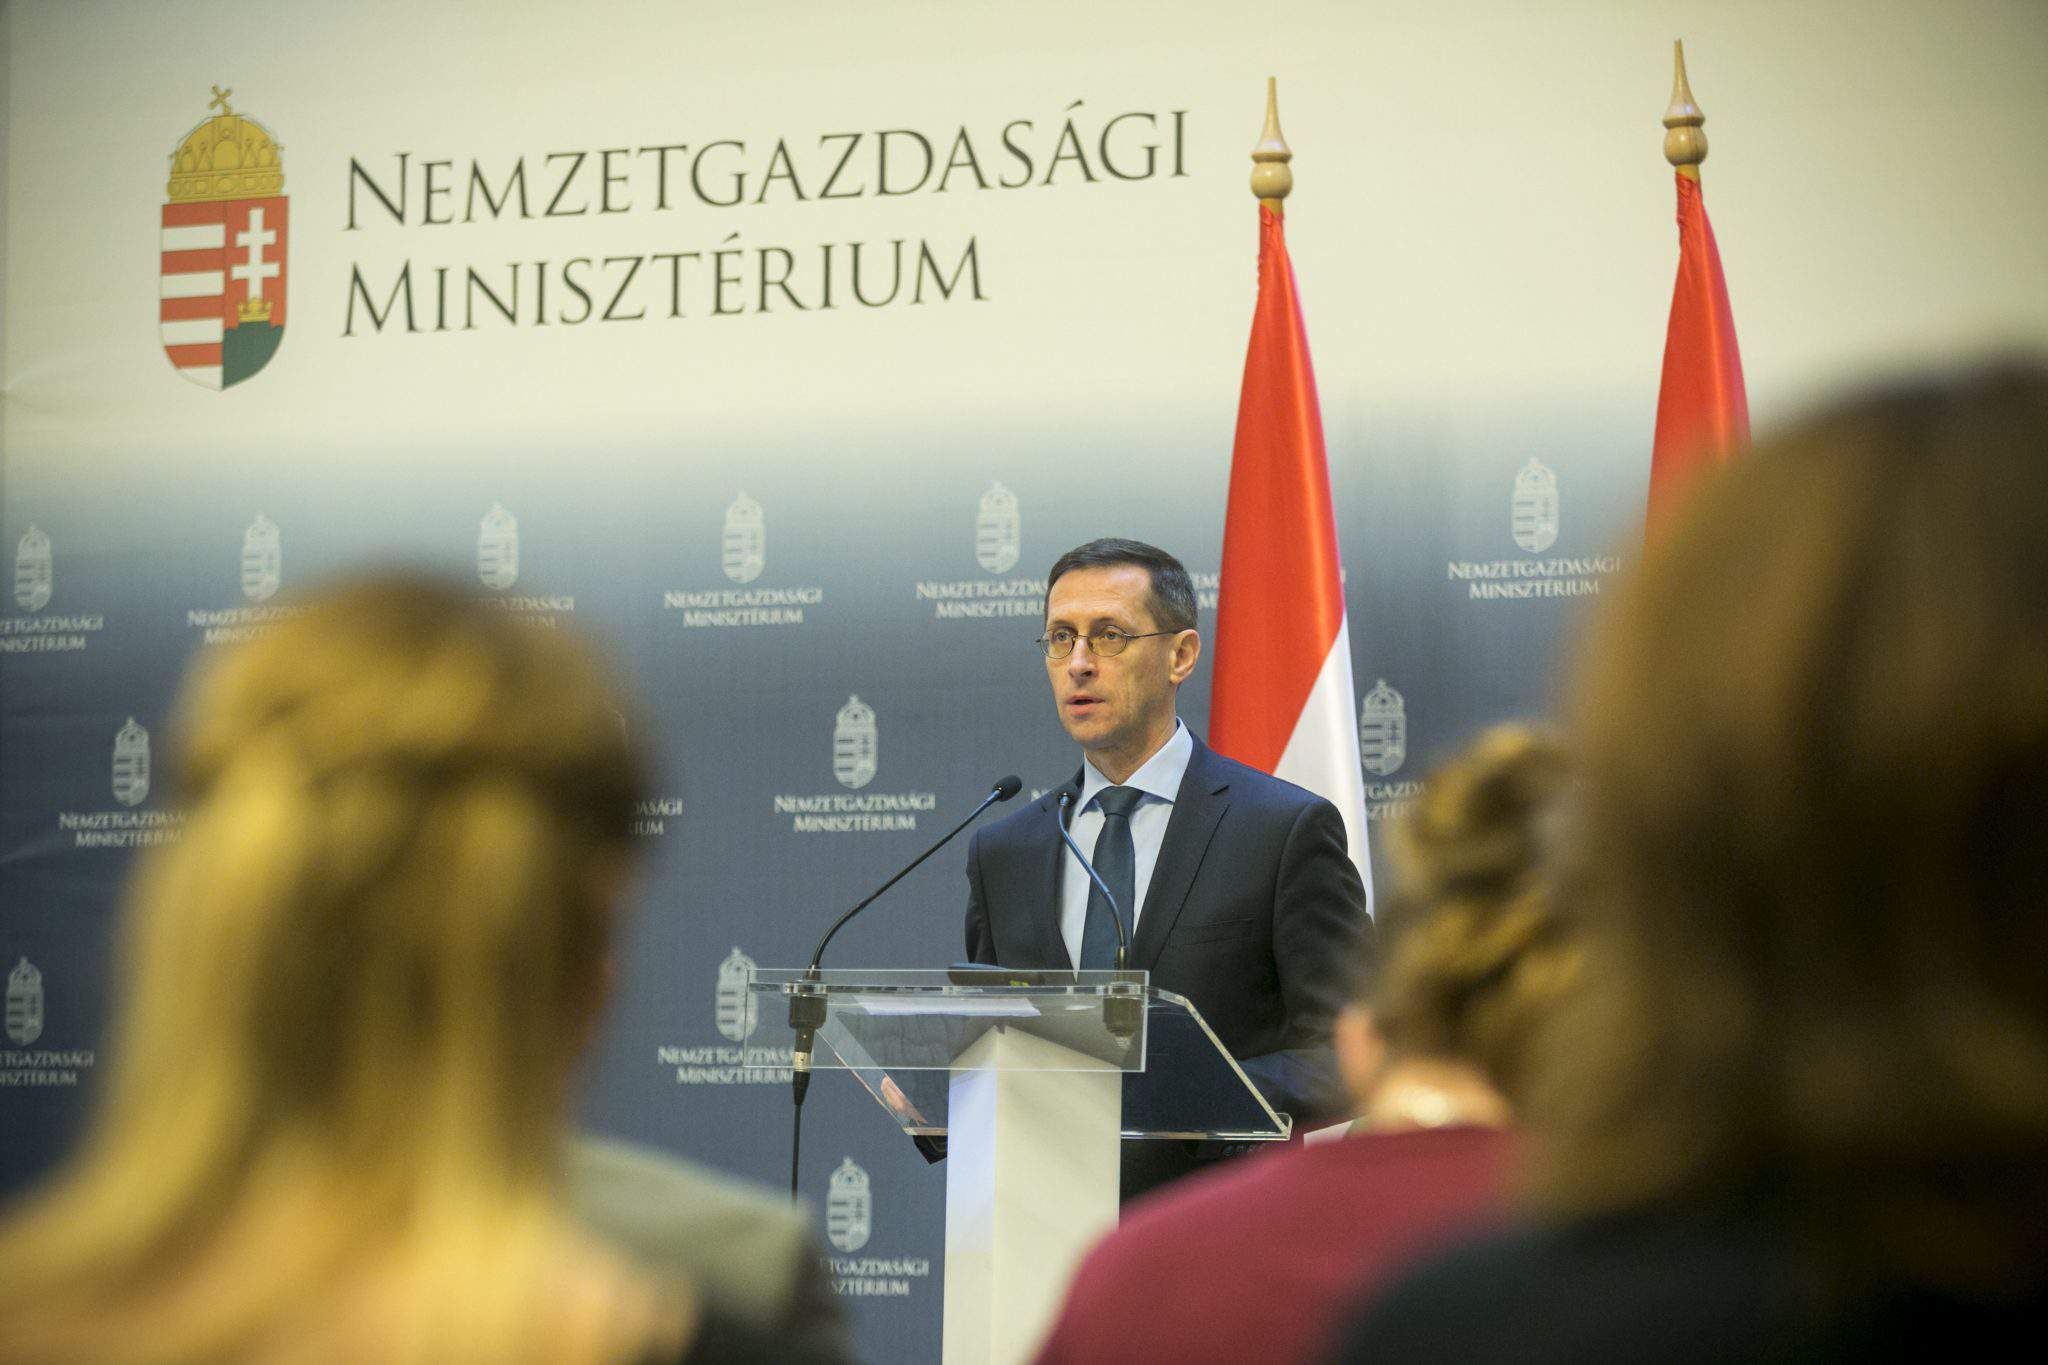 Mađarski ministar gospodarstva Varga